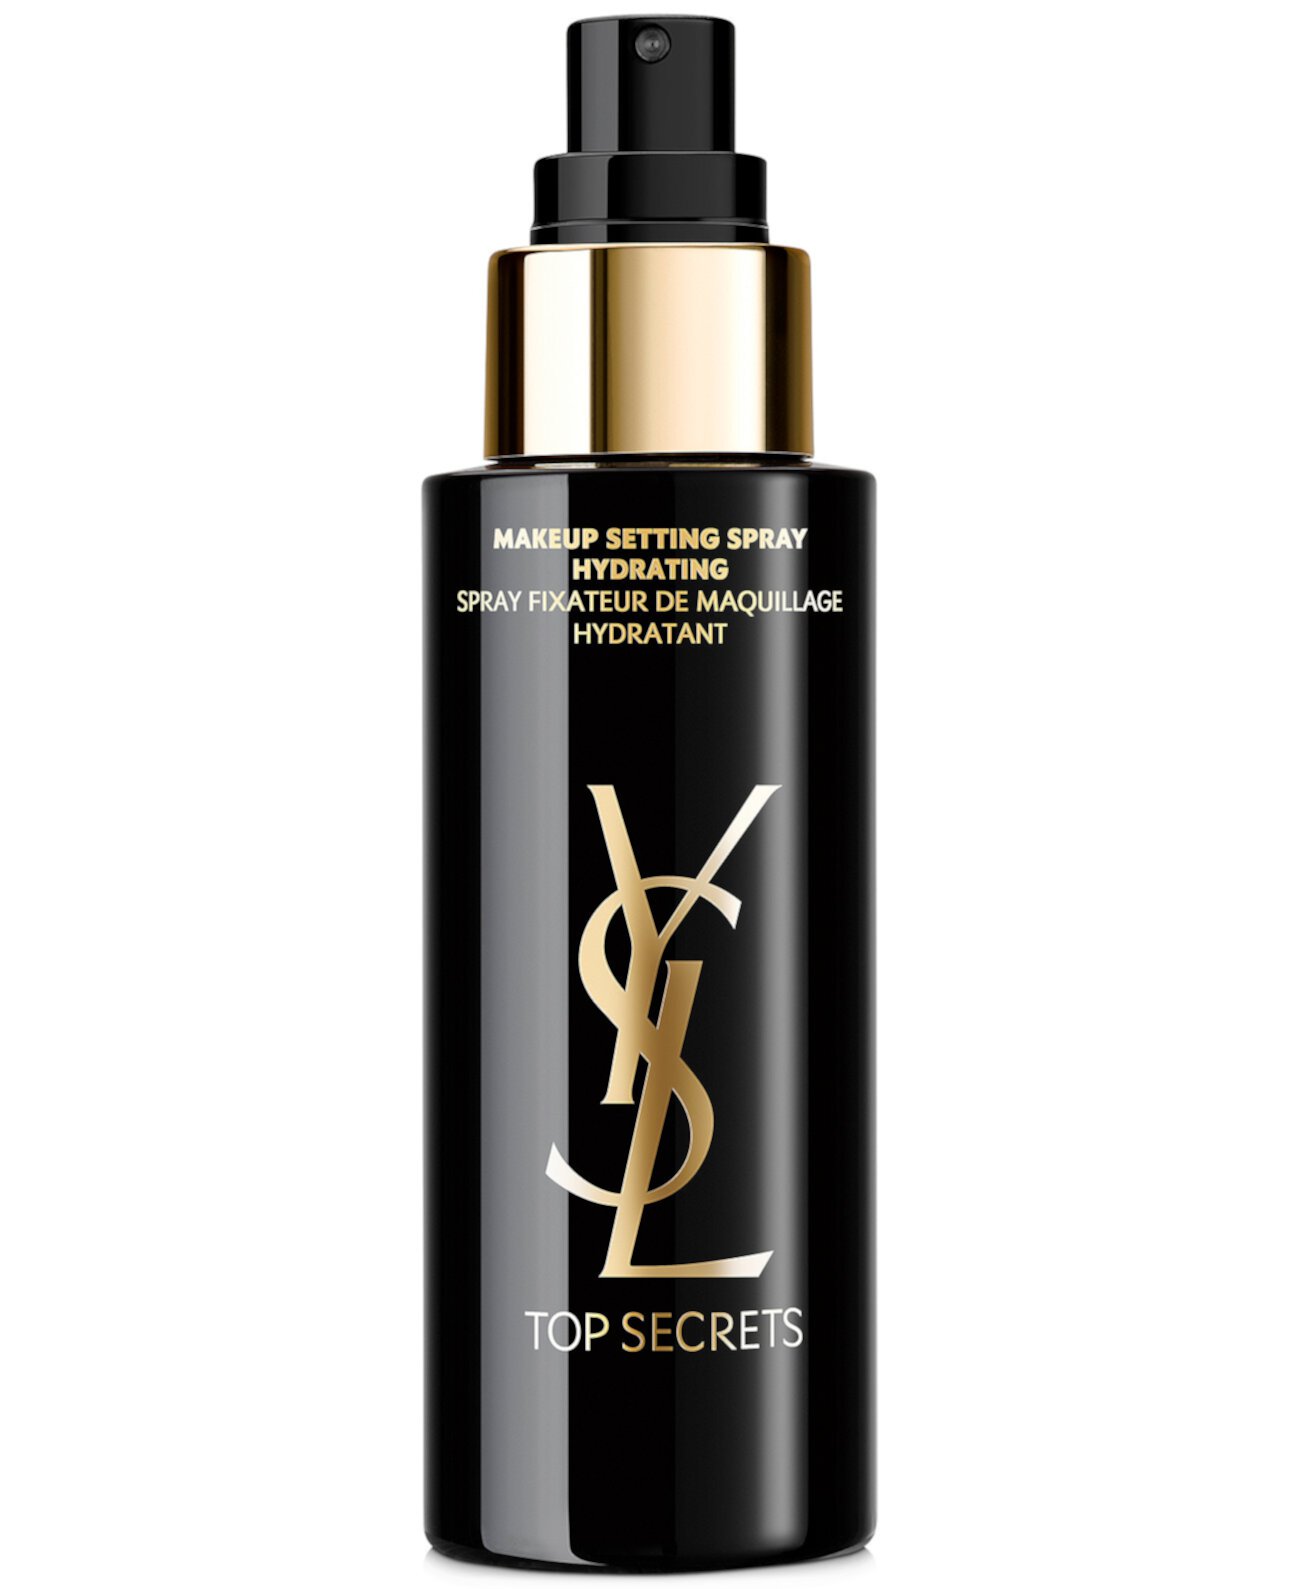 Спрей для макияжа Top Secrets, 3,4 унции. Yves Saint Laurent